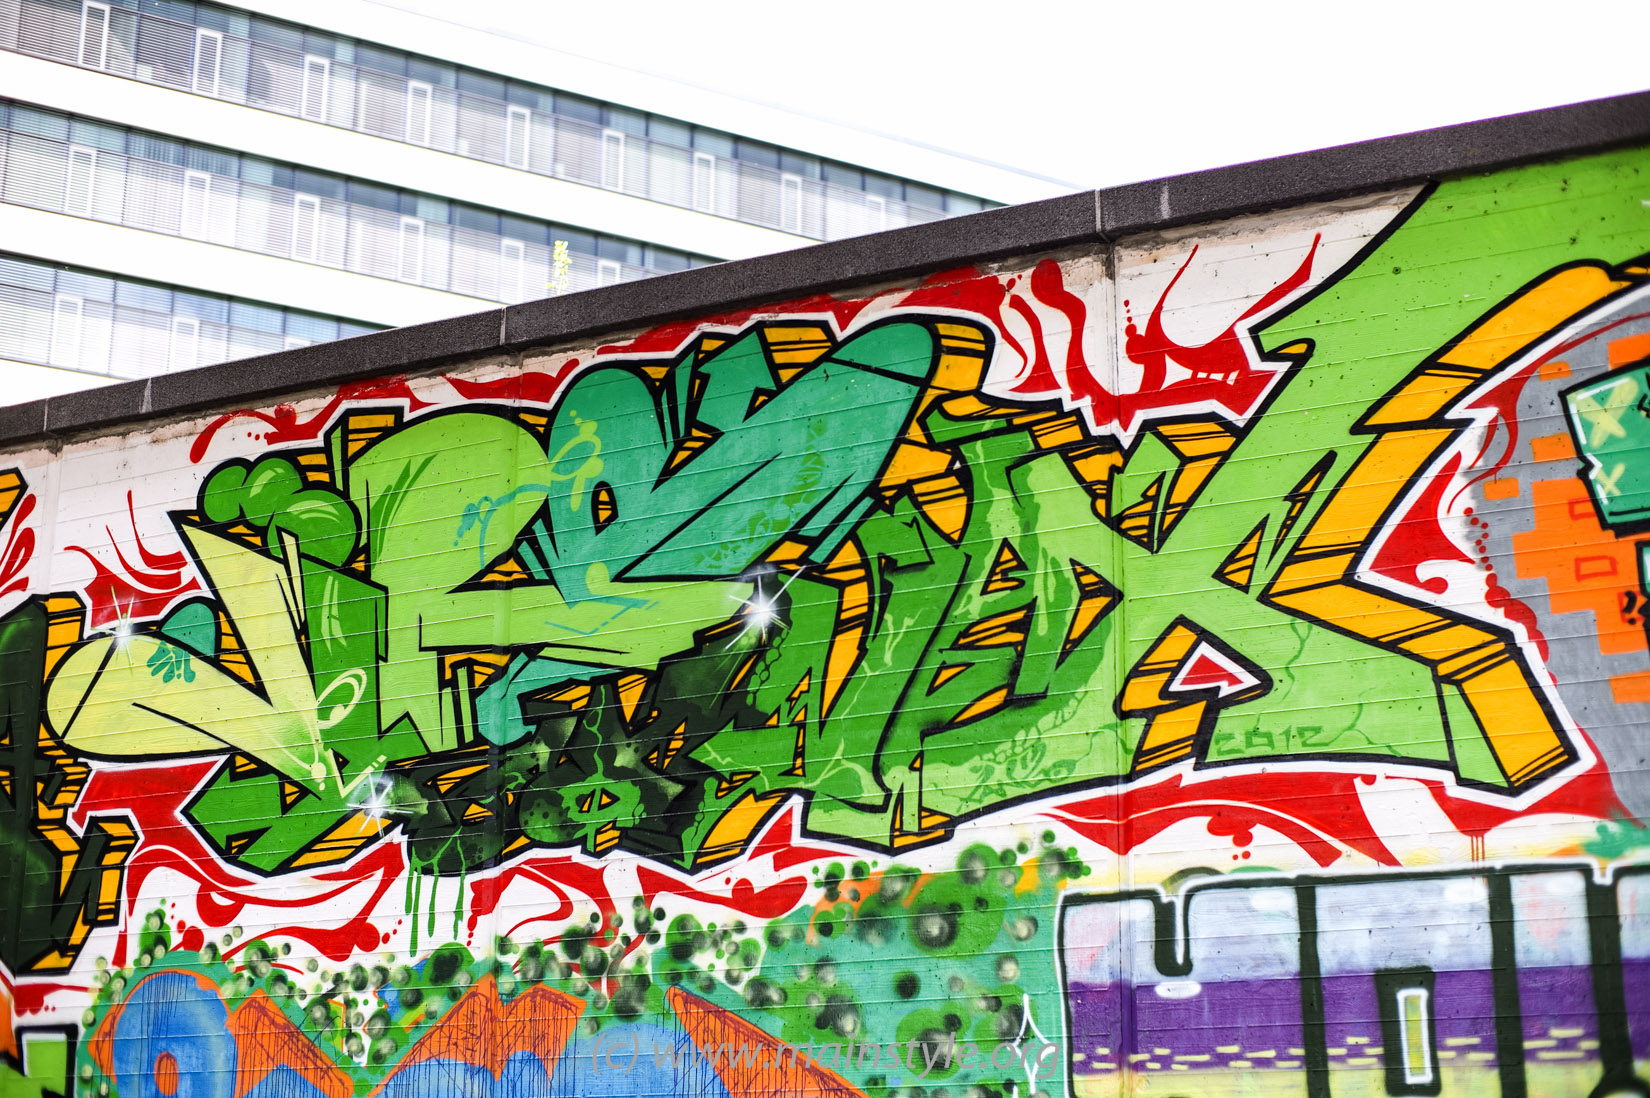 Frankfurt-Höchst_Graffiti_Süwag-Wall_2012 (14 von 35)